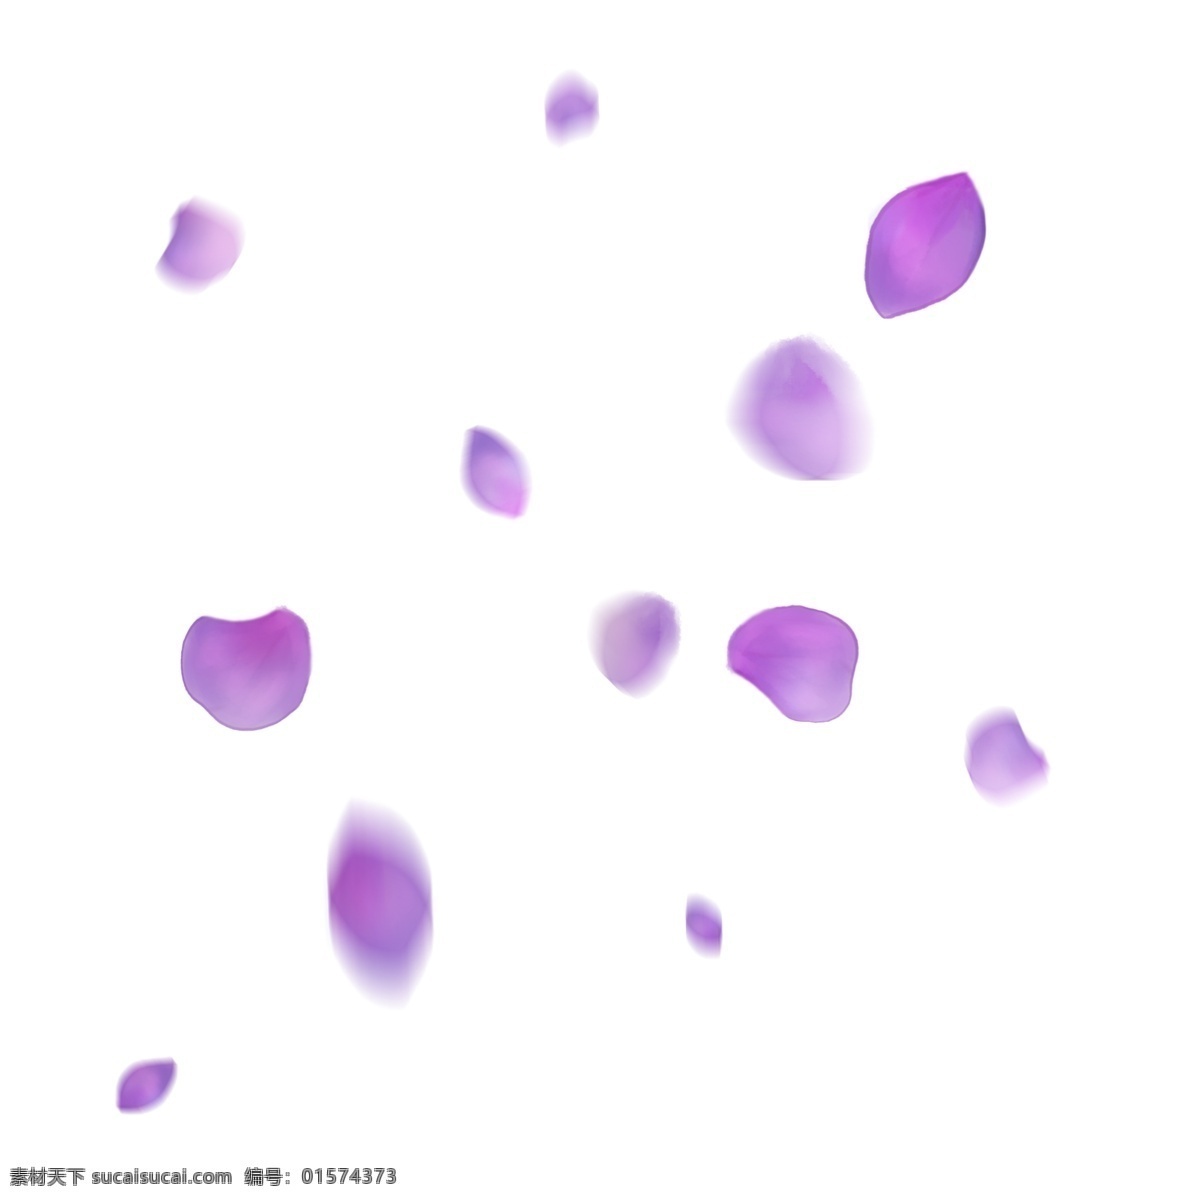 漂浮 紫色 花瓣 手绘 绣球 飘落 紫红色 唯美 浪漫 绣球花瓣 飘落的花瓣 手绘紫色花瓣 飞舞 漂浮素材